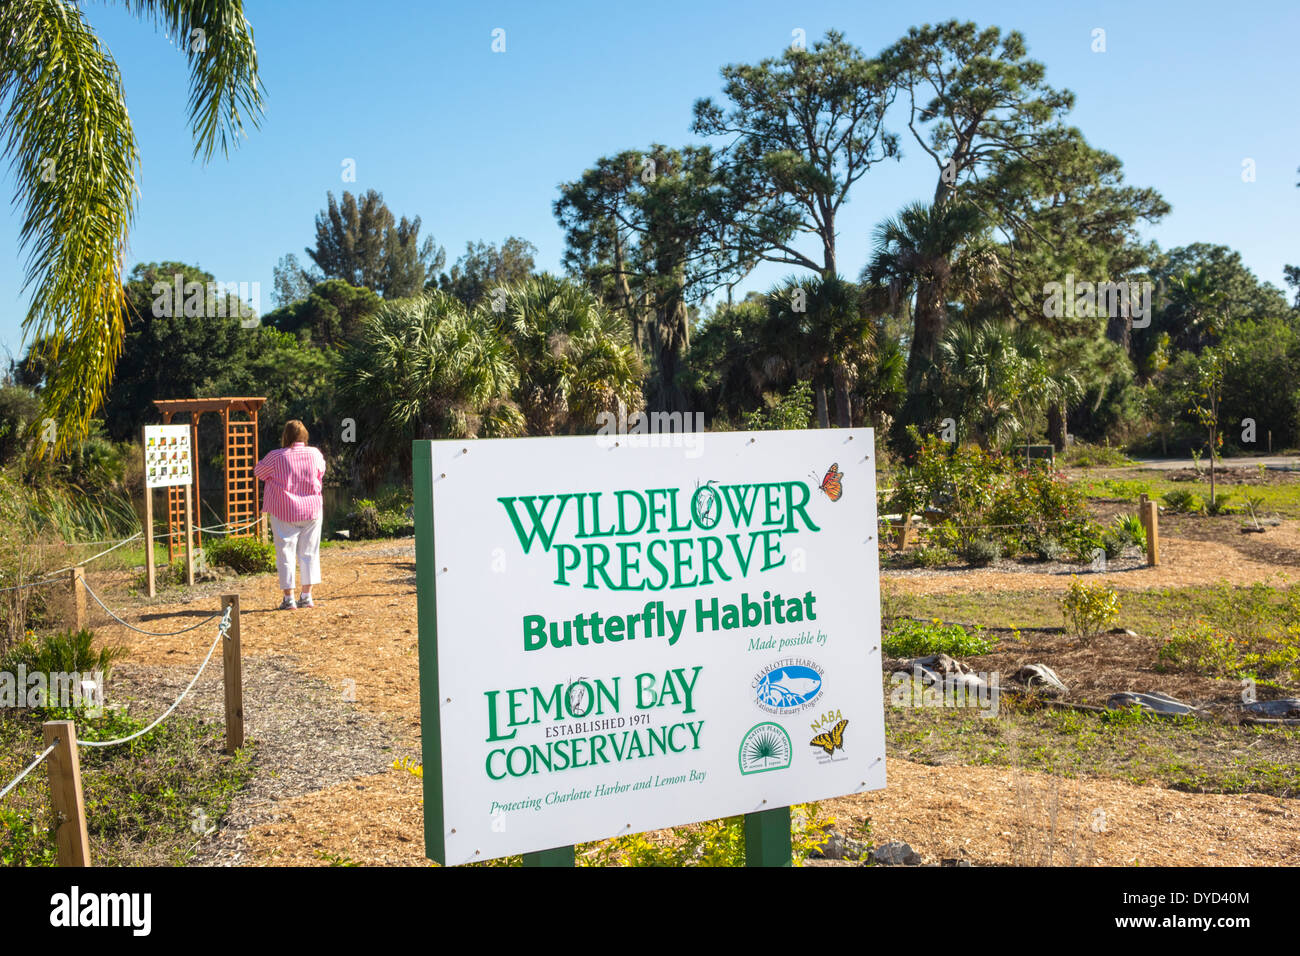 Port de Floride Charlotte Harbor,Placida,Grove City,Englewood,Wildflower Preserve Butterfly Habitat,Lemon Bay Water Conservancy,panneau,logo,Voyage des visiteurs Banque D'Images